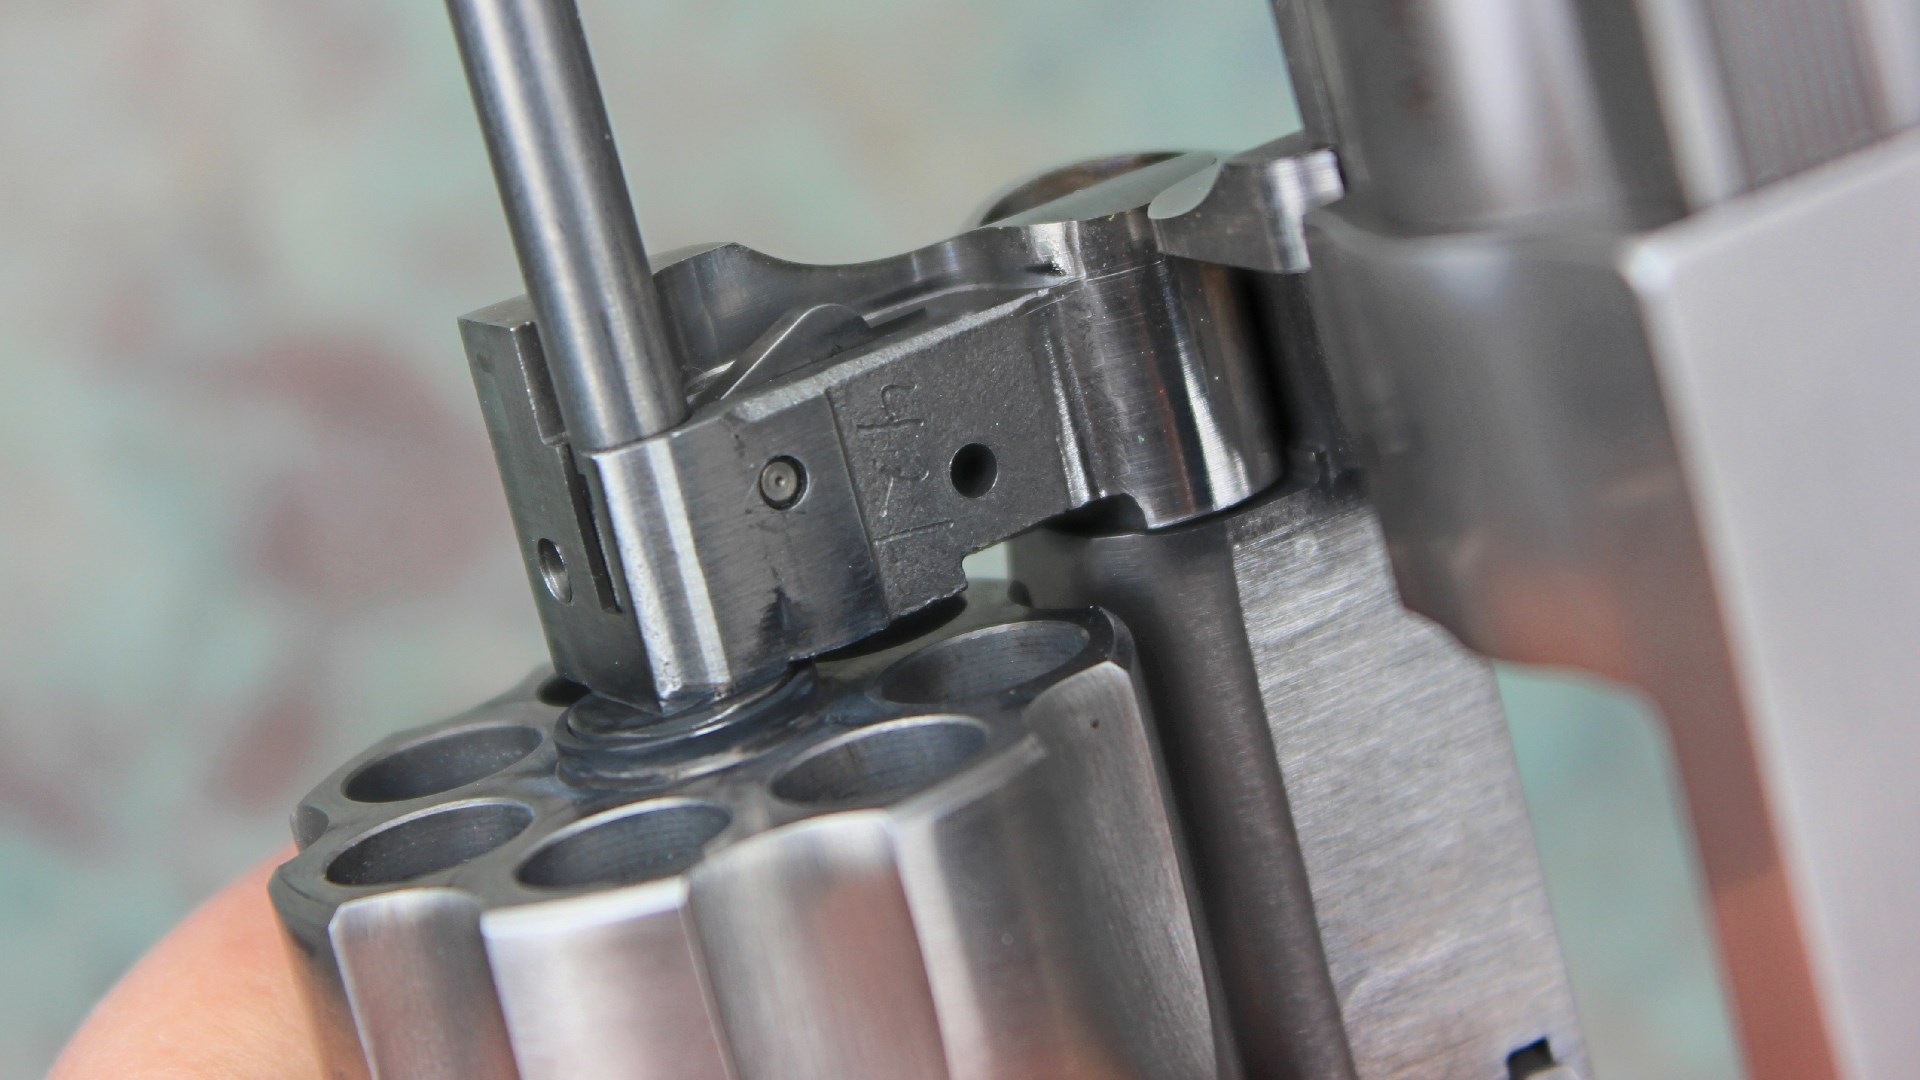 Ruger GP-100 stainless steel revolver yoke detail gun part close-up cylinder metal stamping lockup